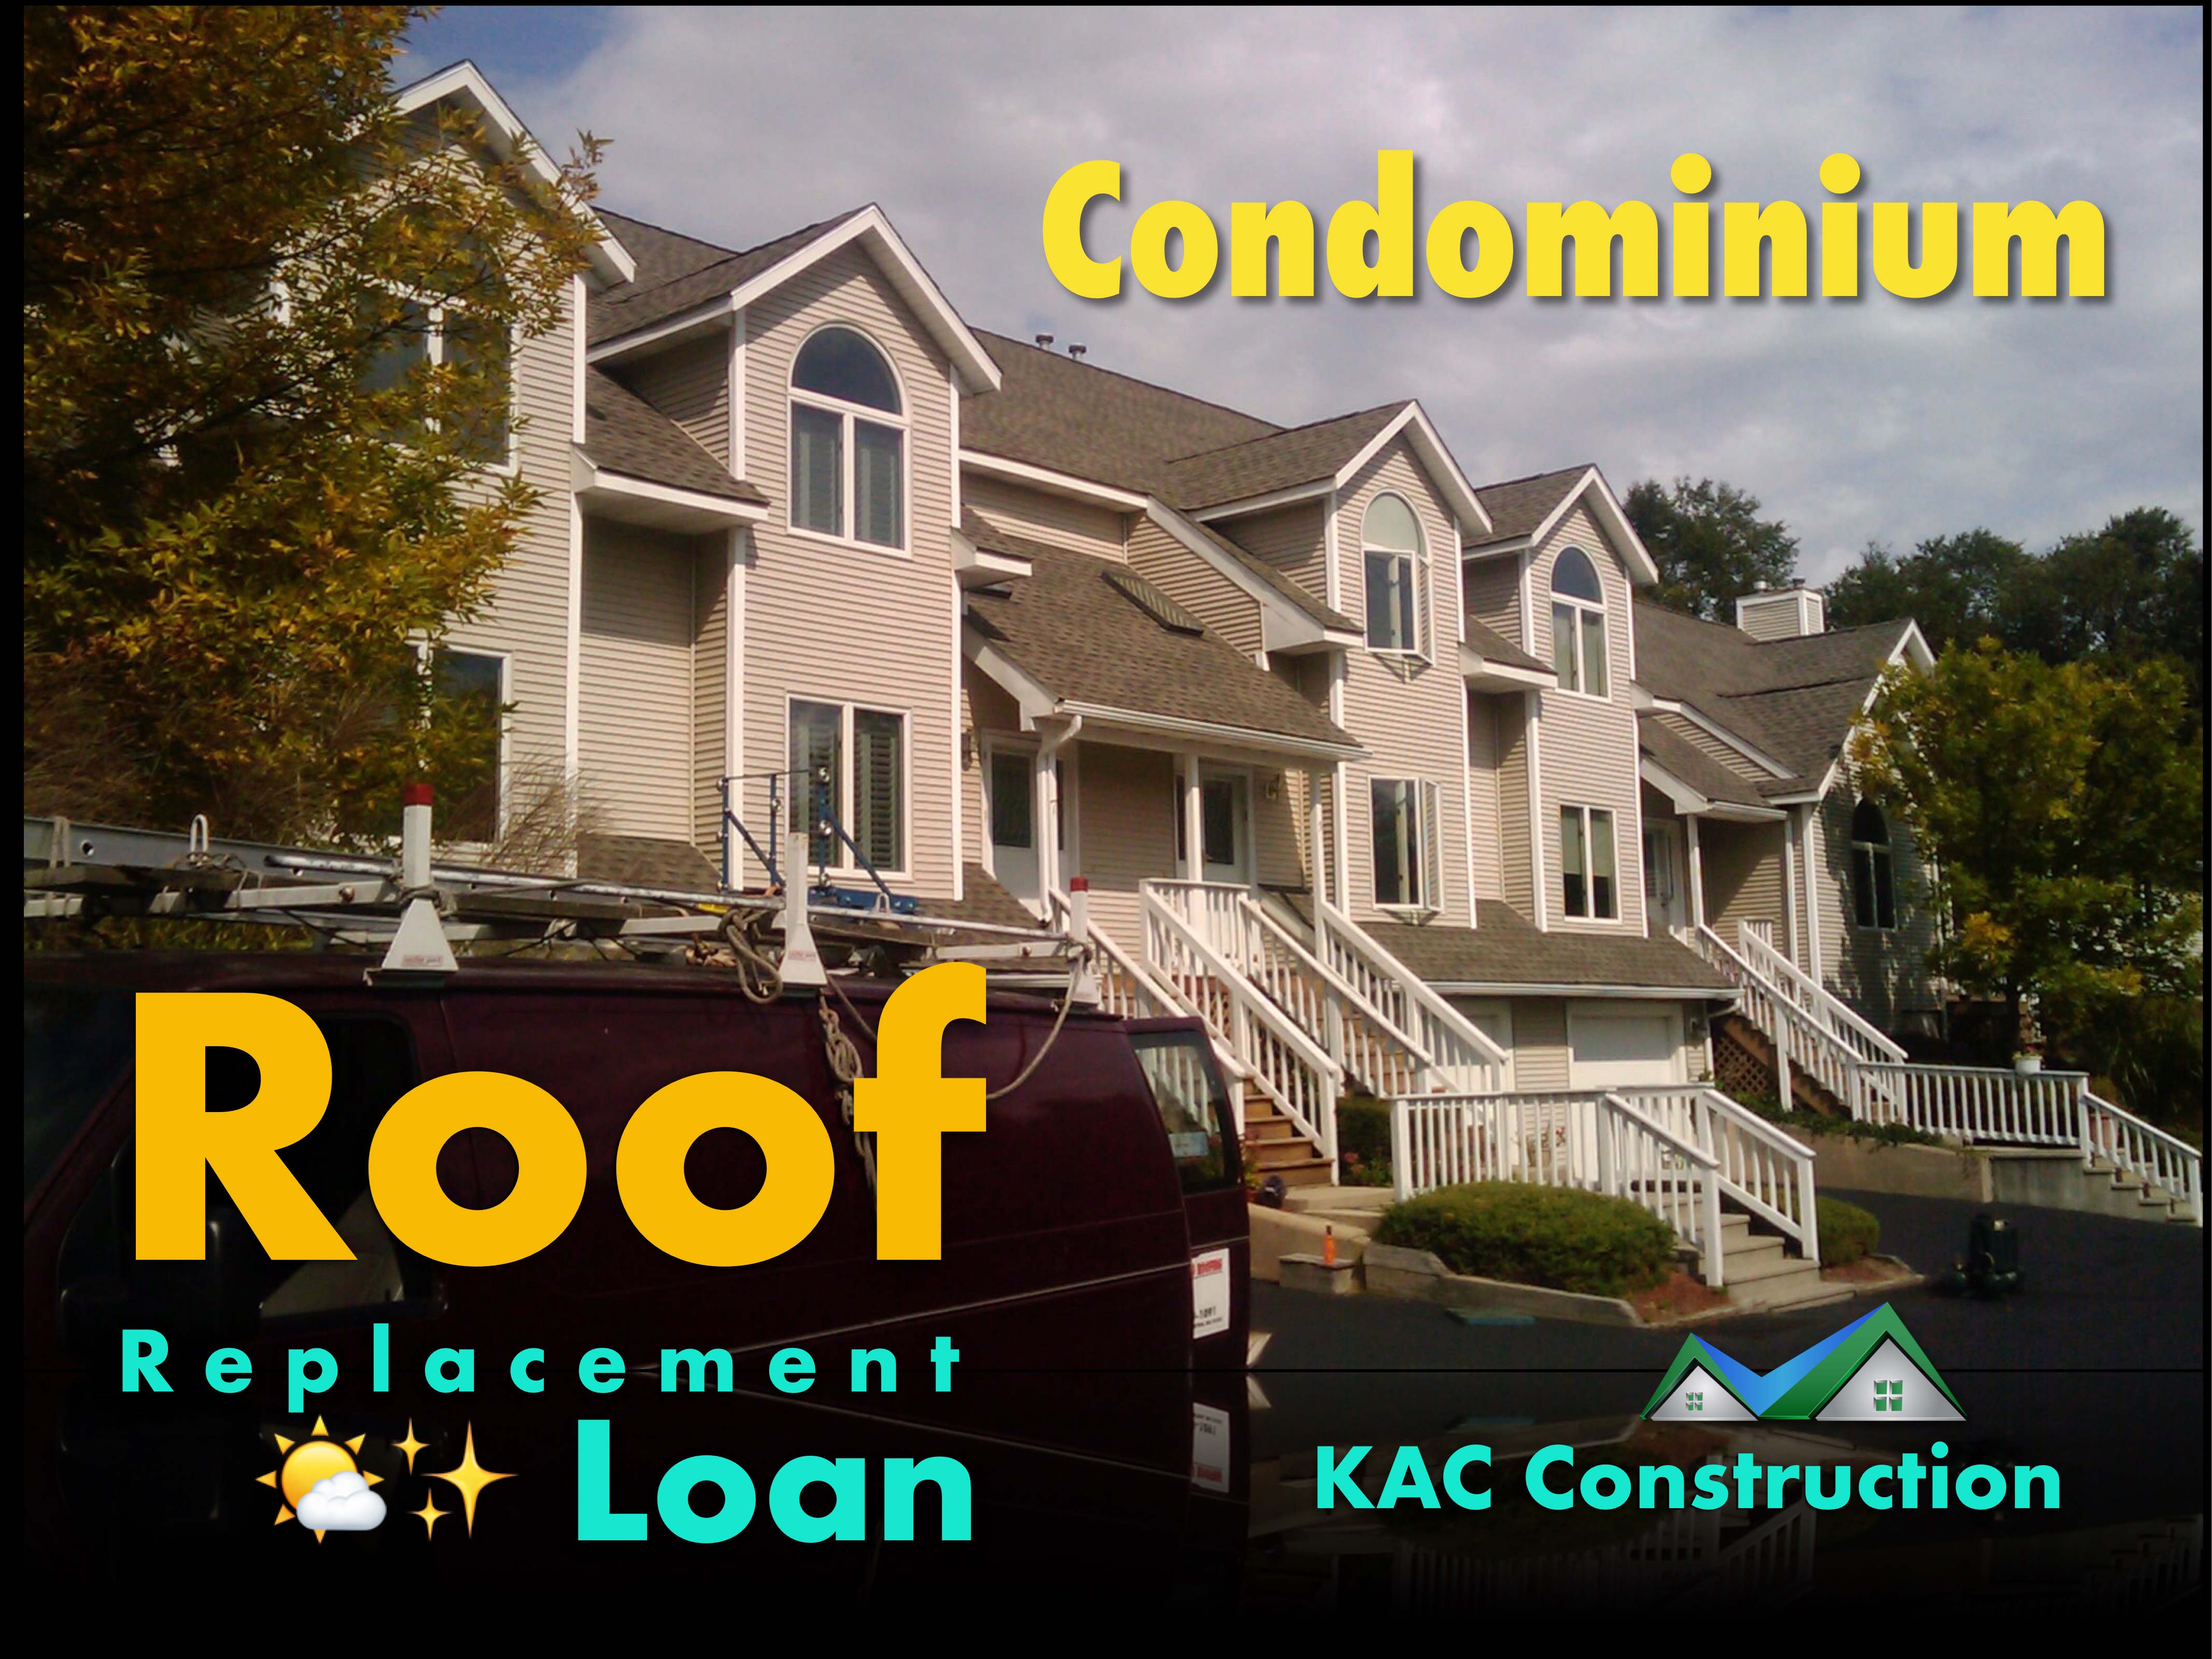 Condominium loan ri, condominium roof loan, condominium roof Loan ri, condominium roof replacement, condominium roof replacement ri, condominium roof replacement loan ri, roof replacement ri,